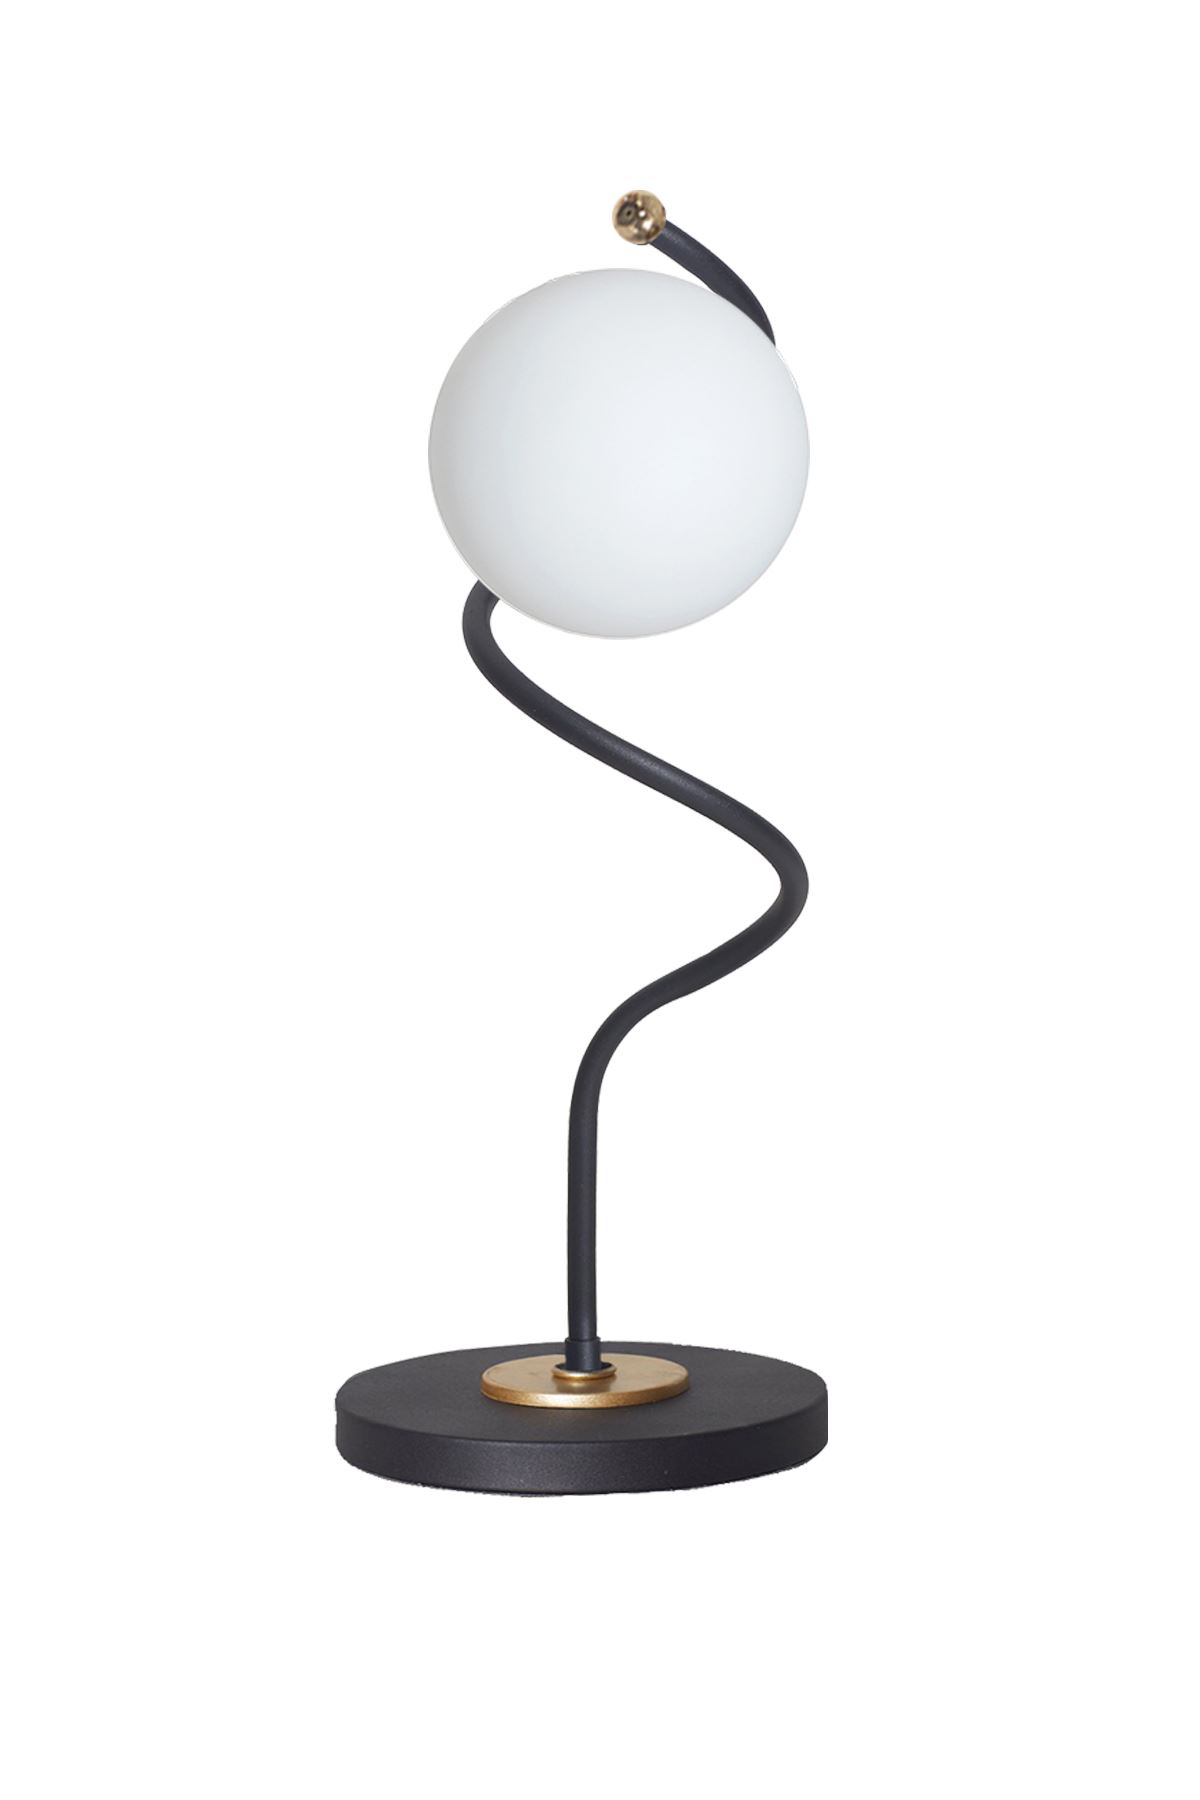 Nora Siyah-Gold Metal Gövde Beyaz Camlı Tasarım Lüx Masa Lambası